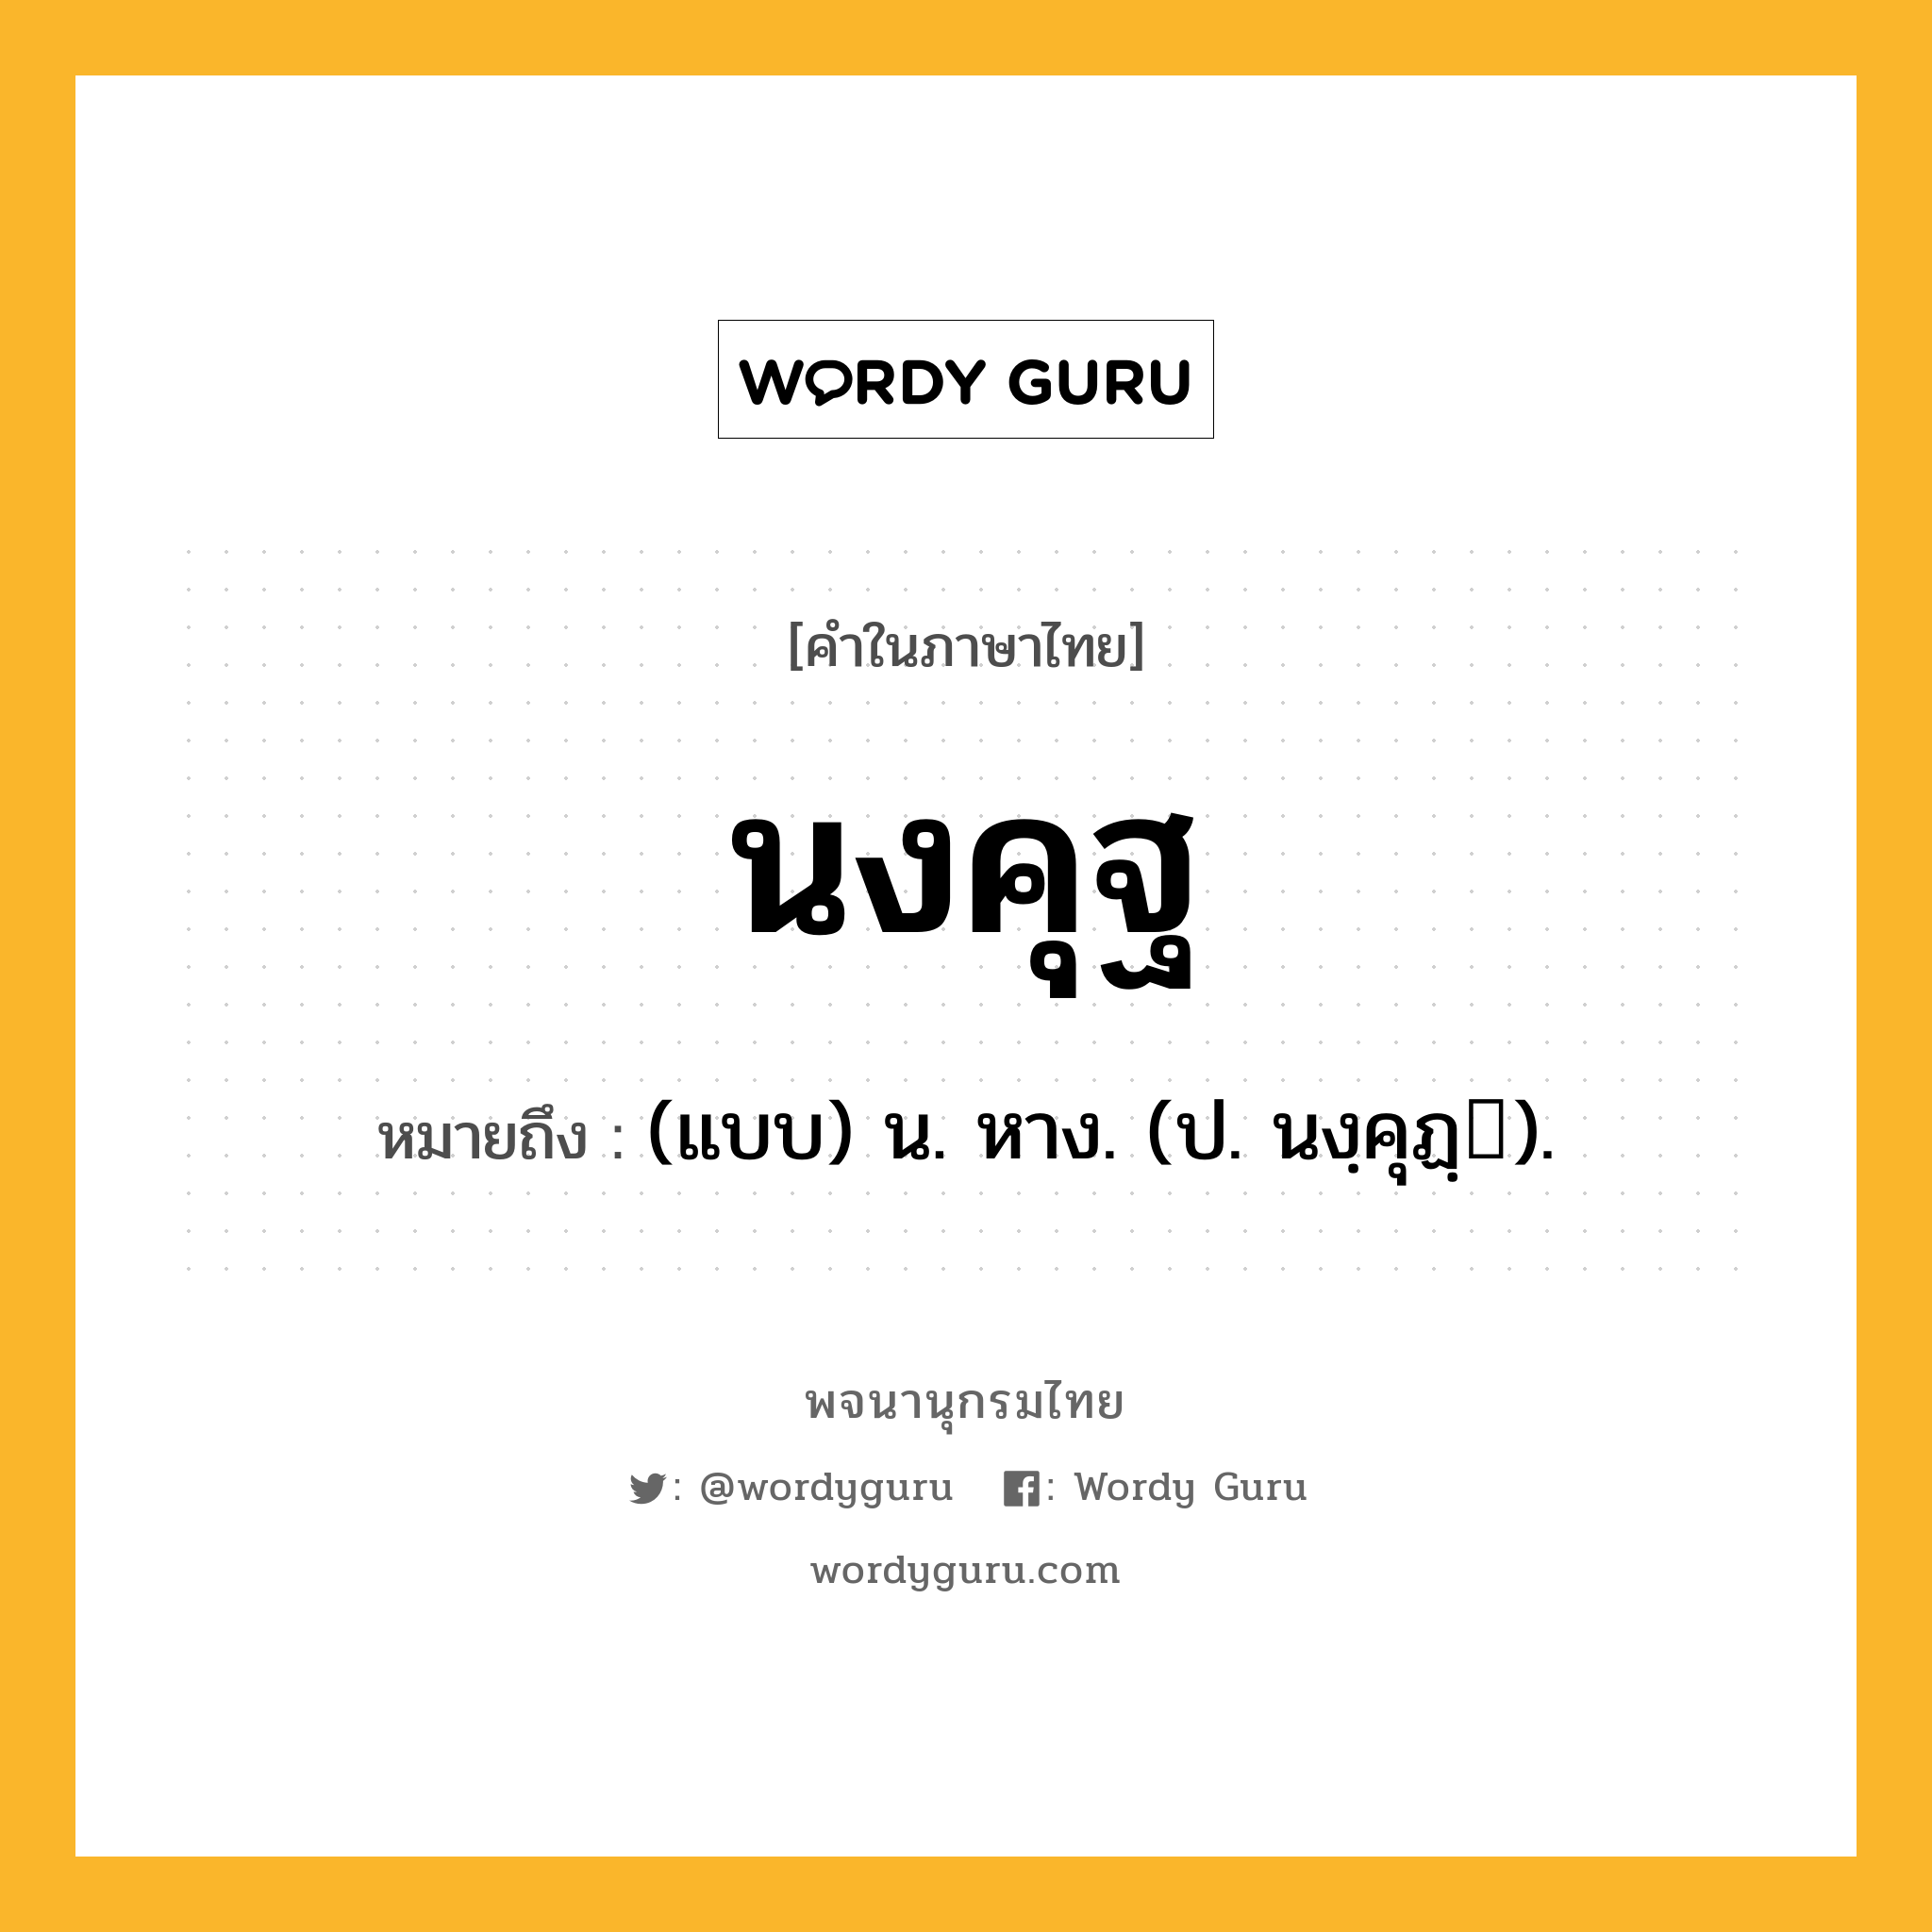 นงคุฐ ความหมาย หมายถึงอะไร?, คำในภาษาไทย นงคุฐ หมายถึง (แบบ) น. หาง. (ป. นงฺคุฏฺ).